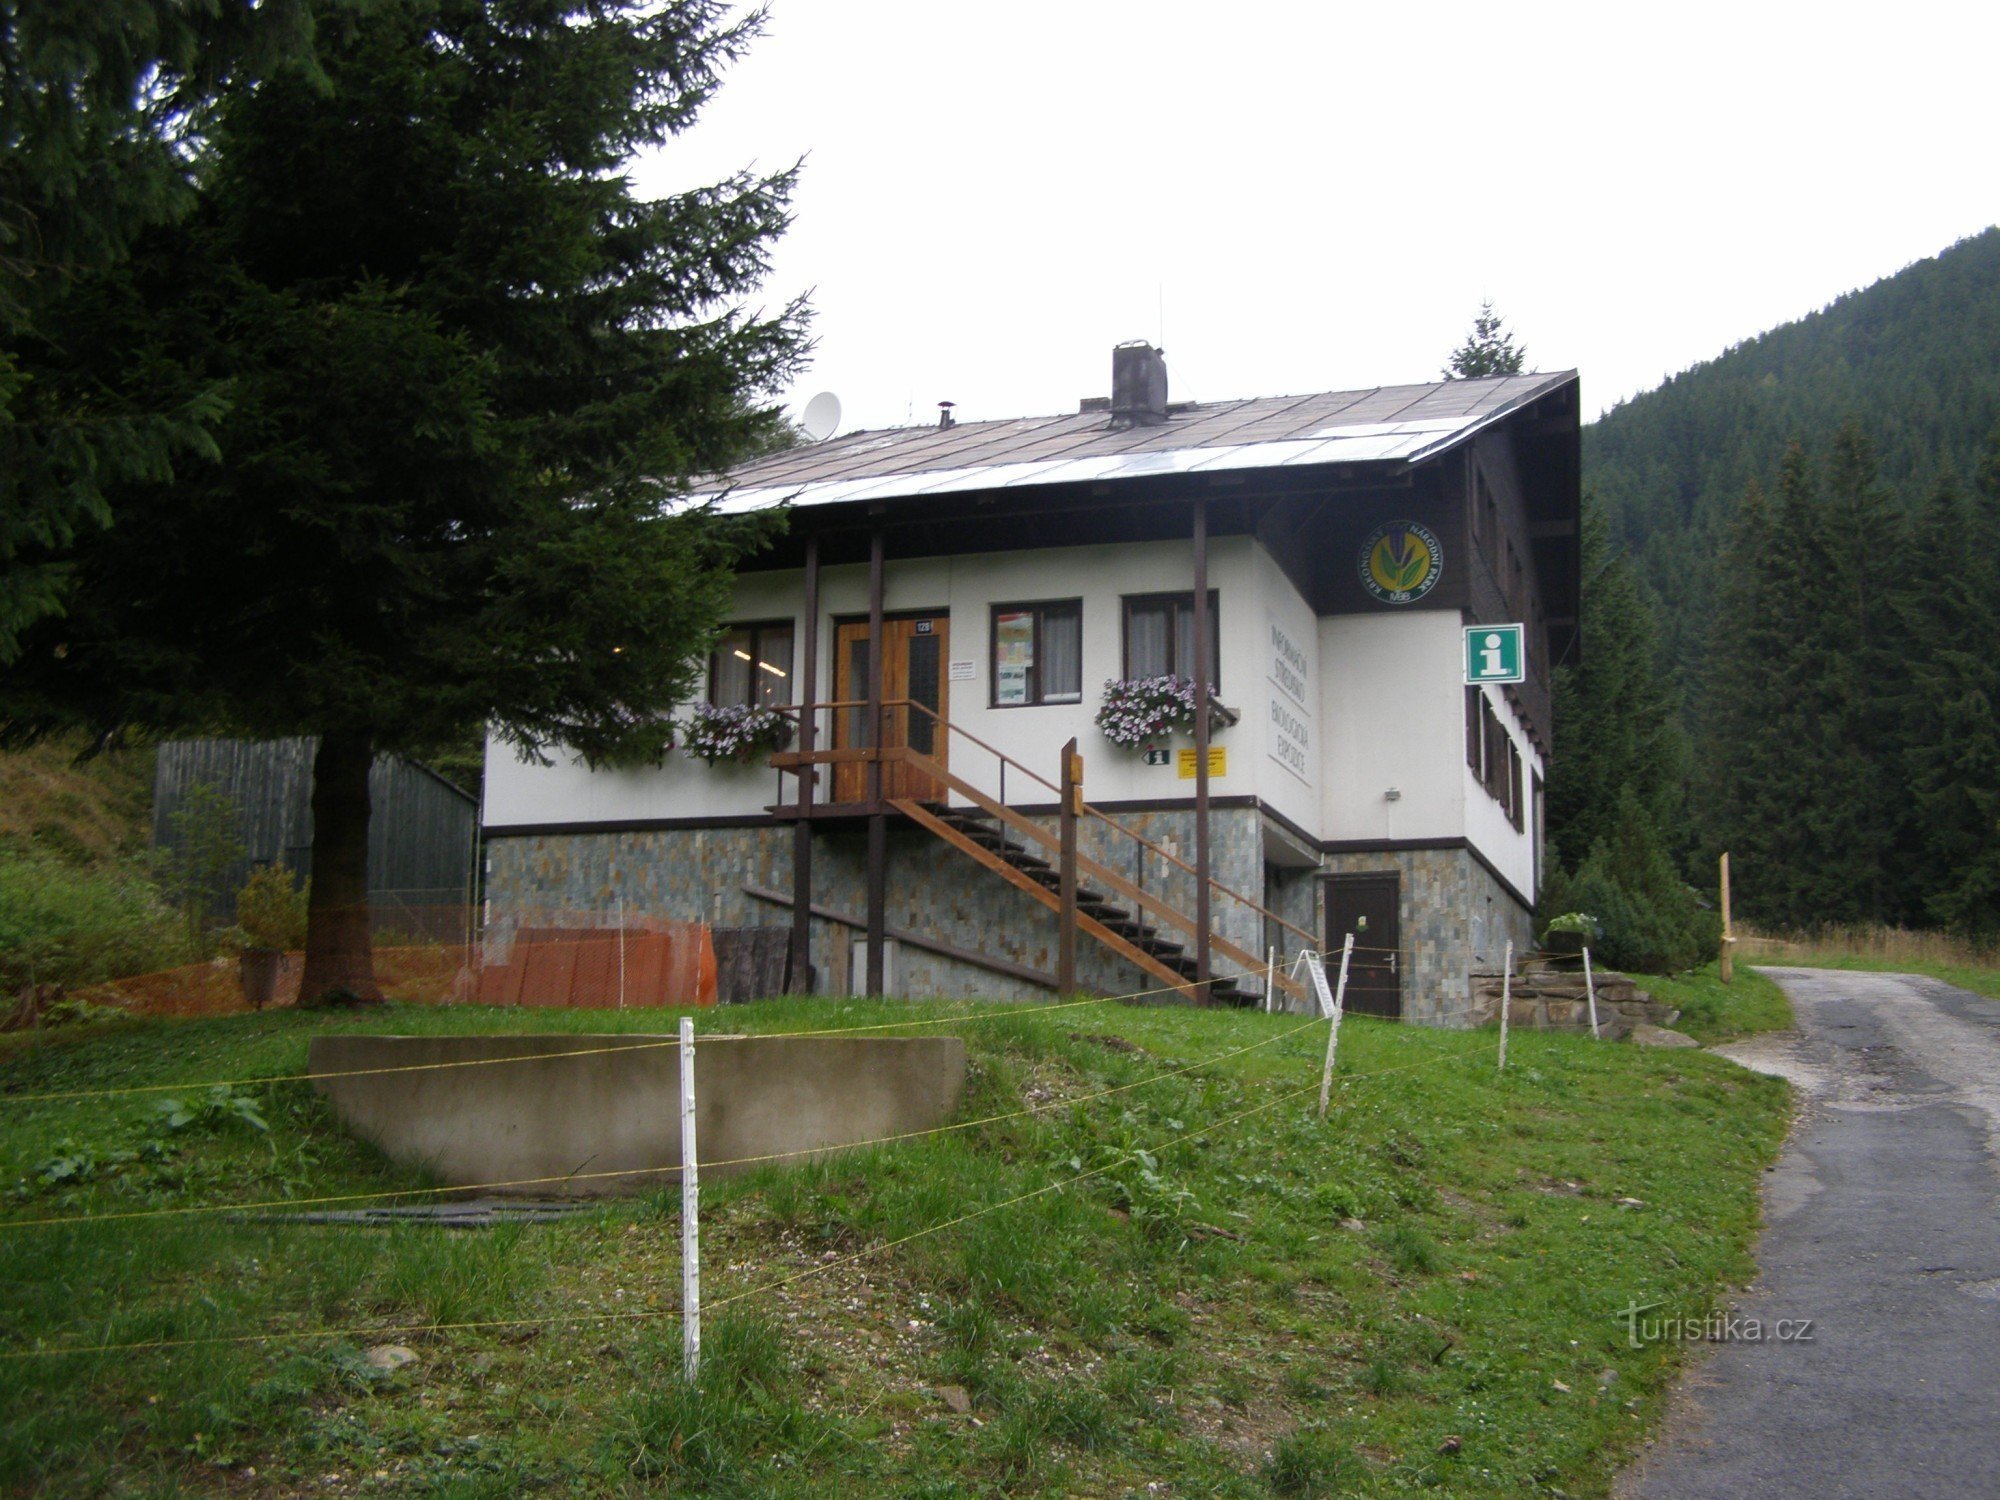 Obrí důl - information center of the KRNAP administration